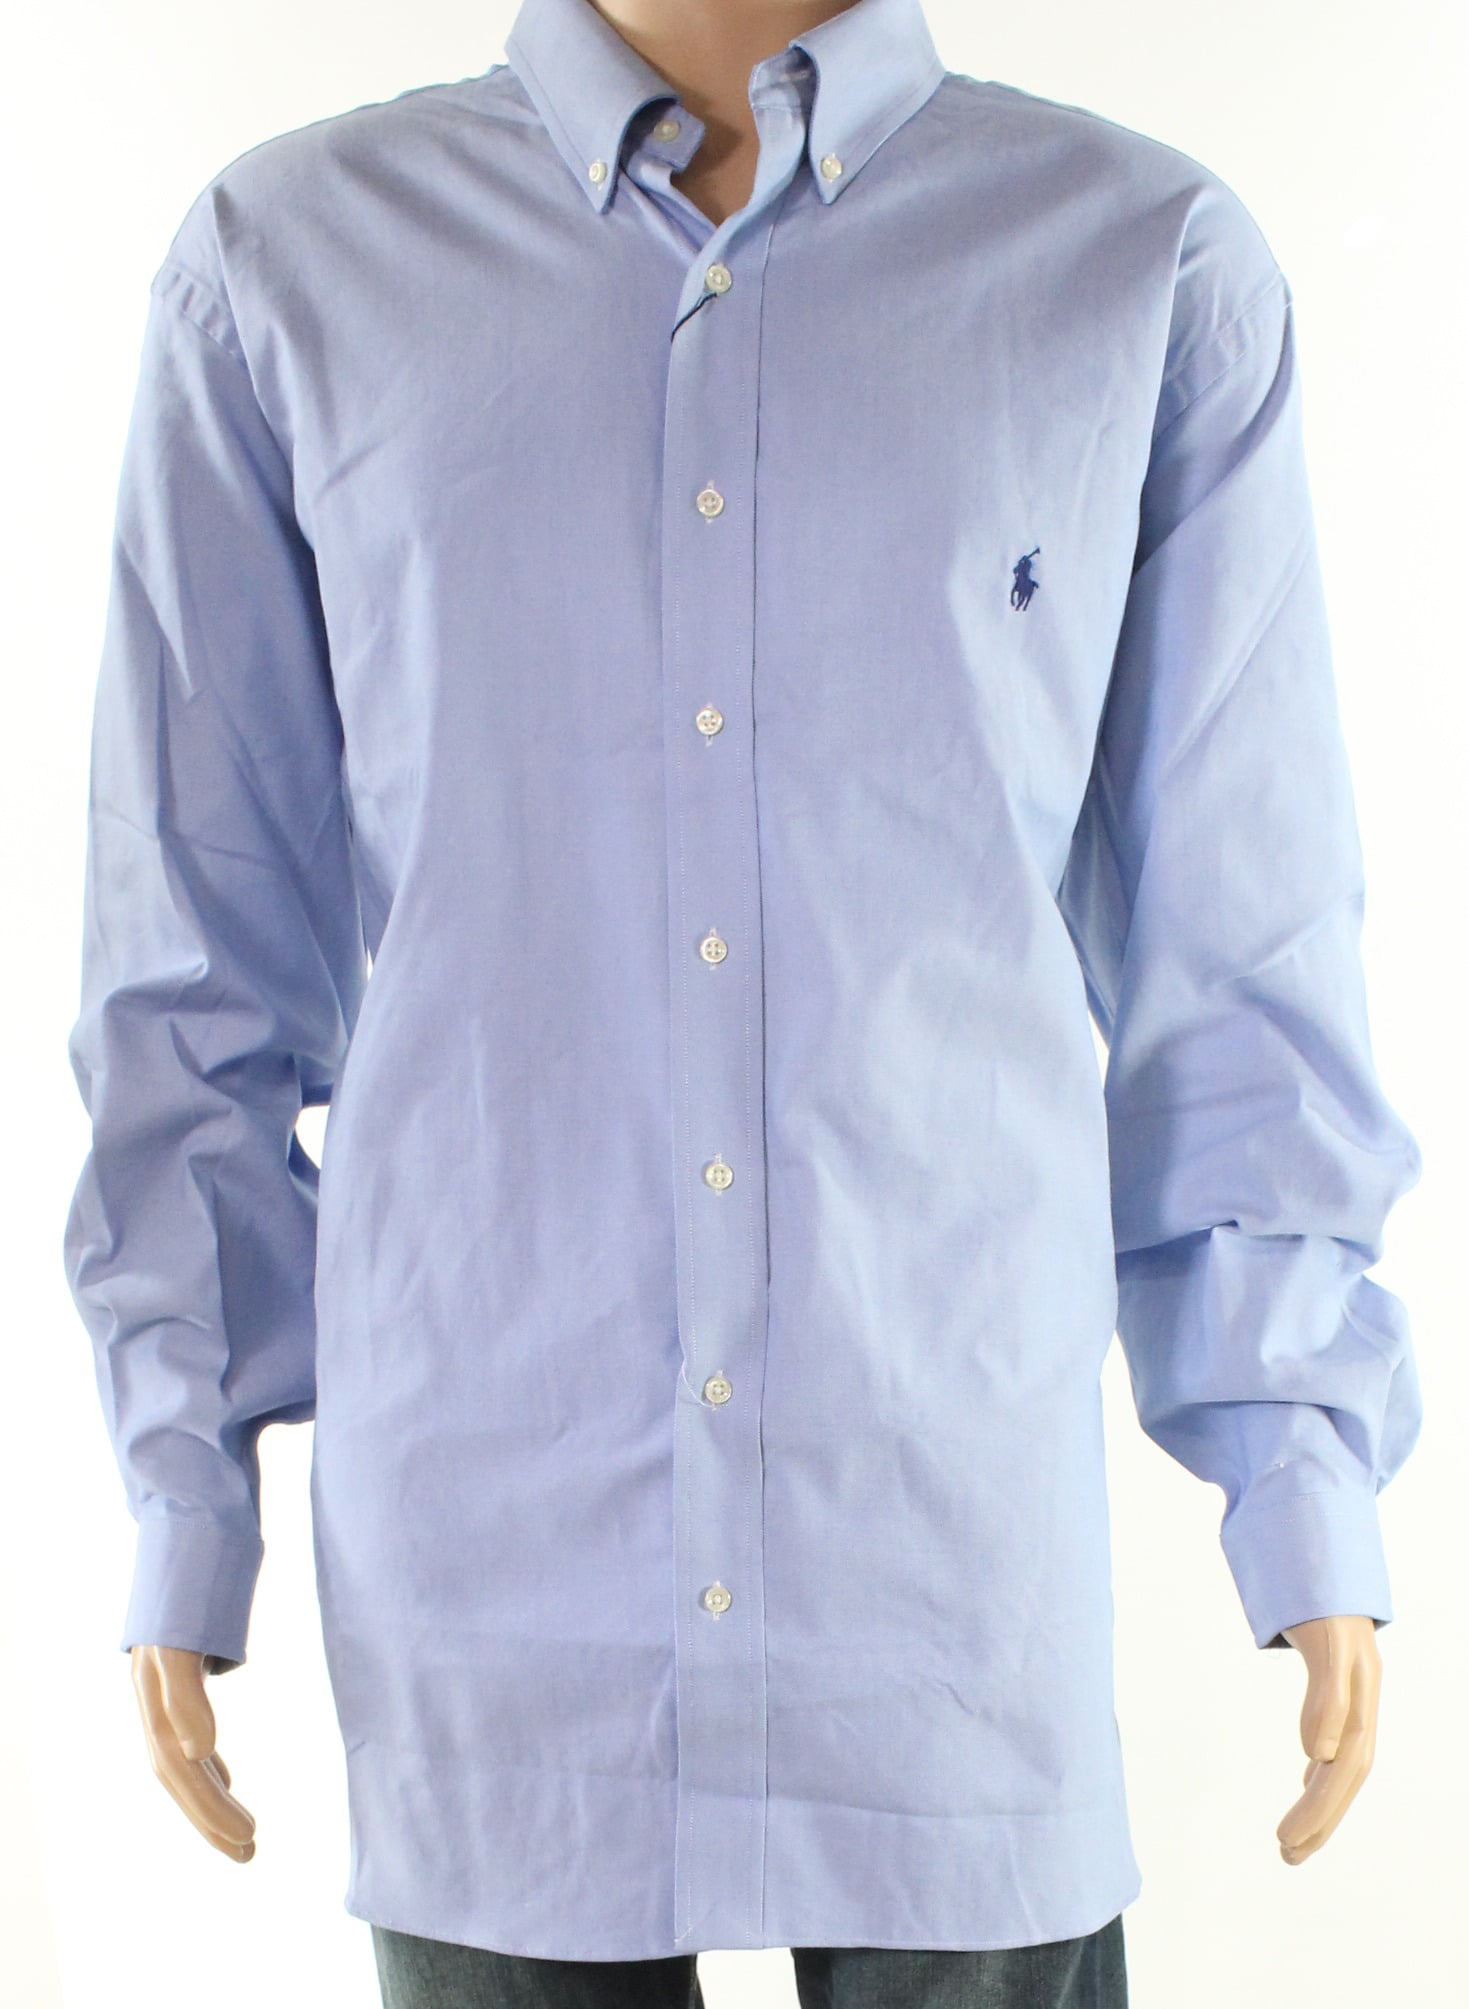 Ralph Lauren - Mens Button Down Long-Sleeve Shirt Big 3X - Walmart.com ...